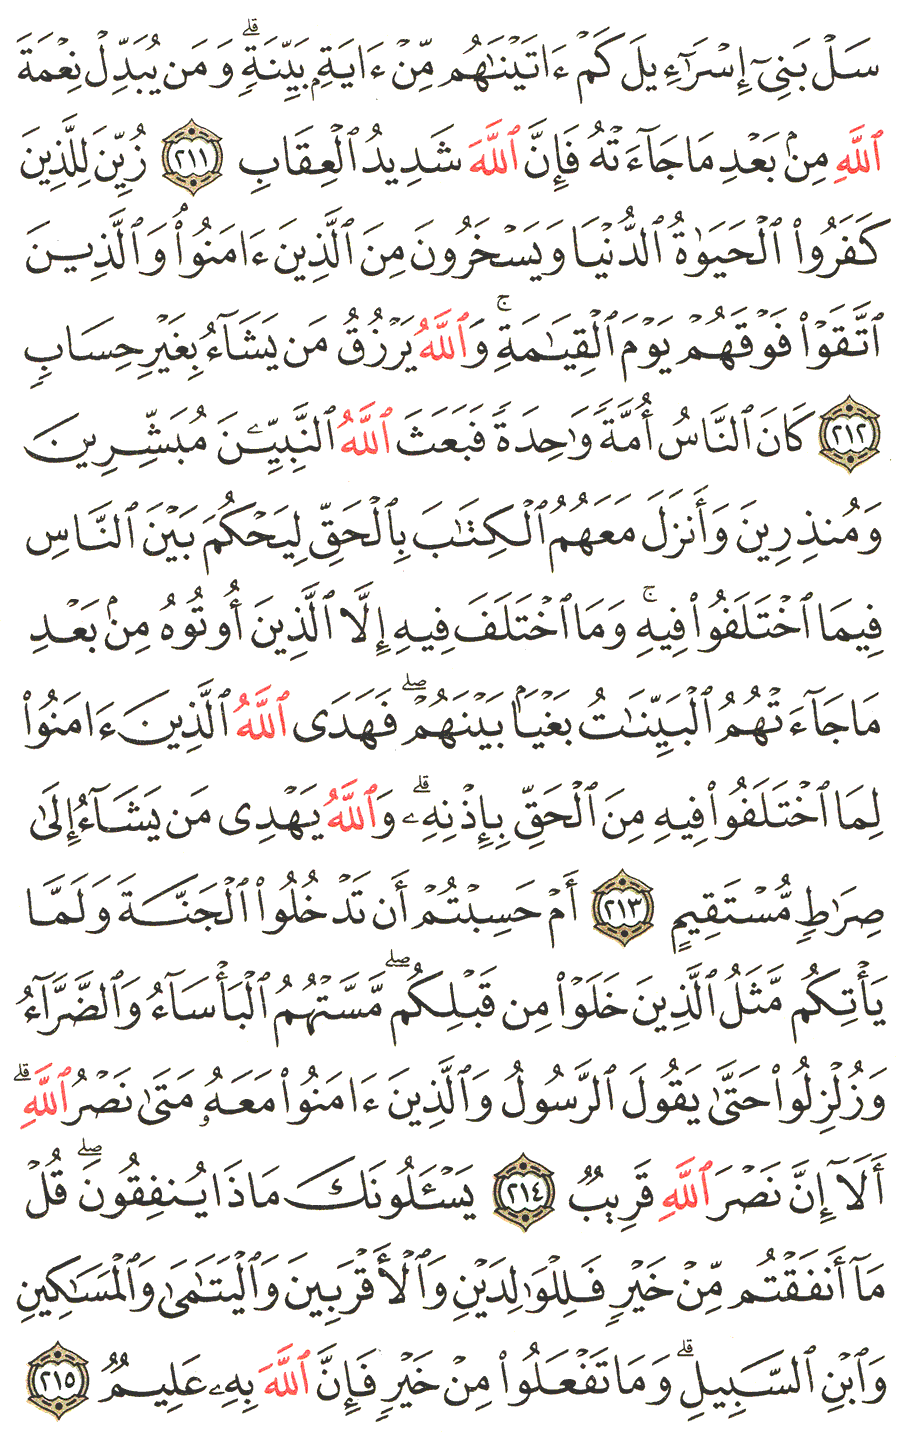 الصفحة 33 من القرآن الكريم